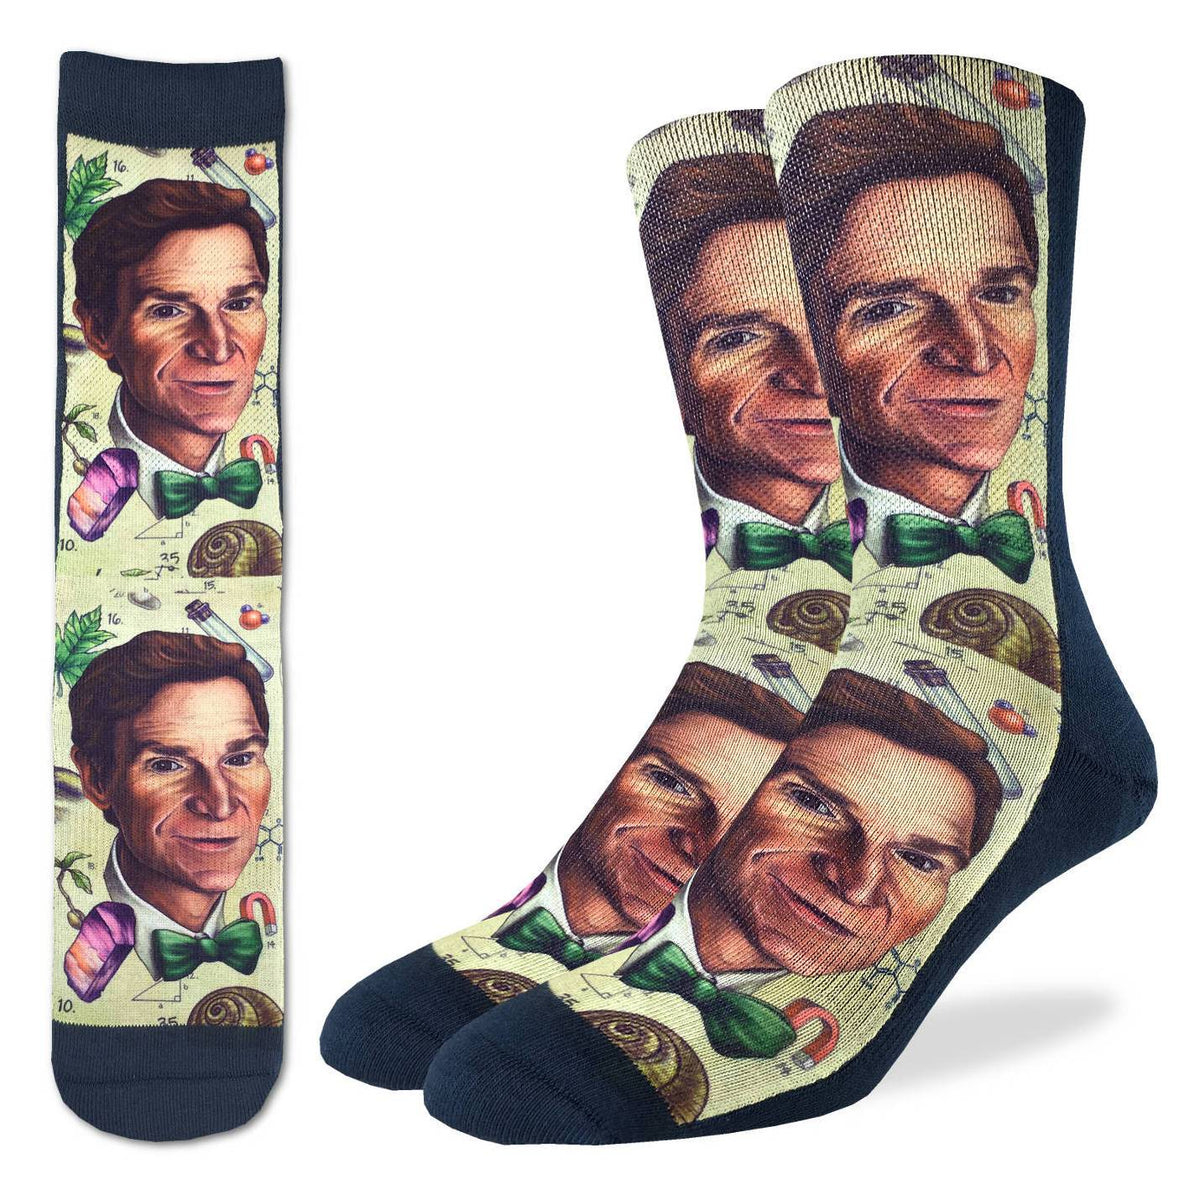 Men's Bill Nye Socks